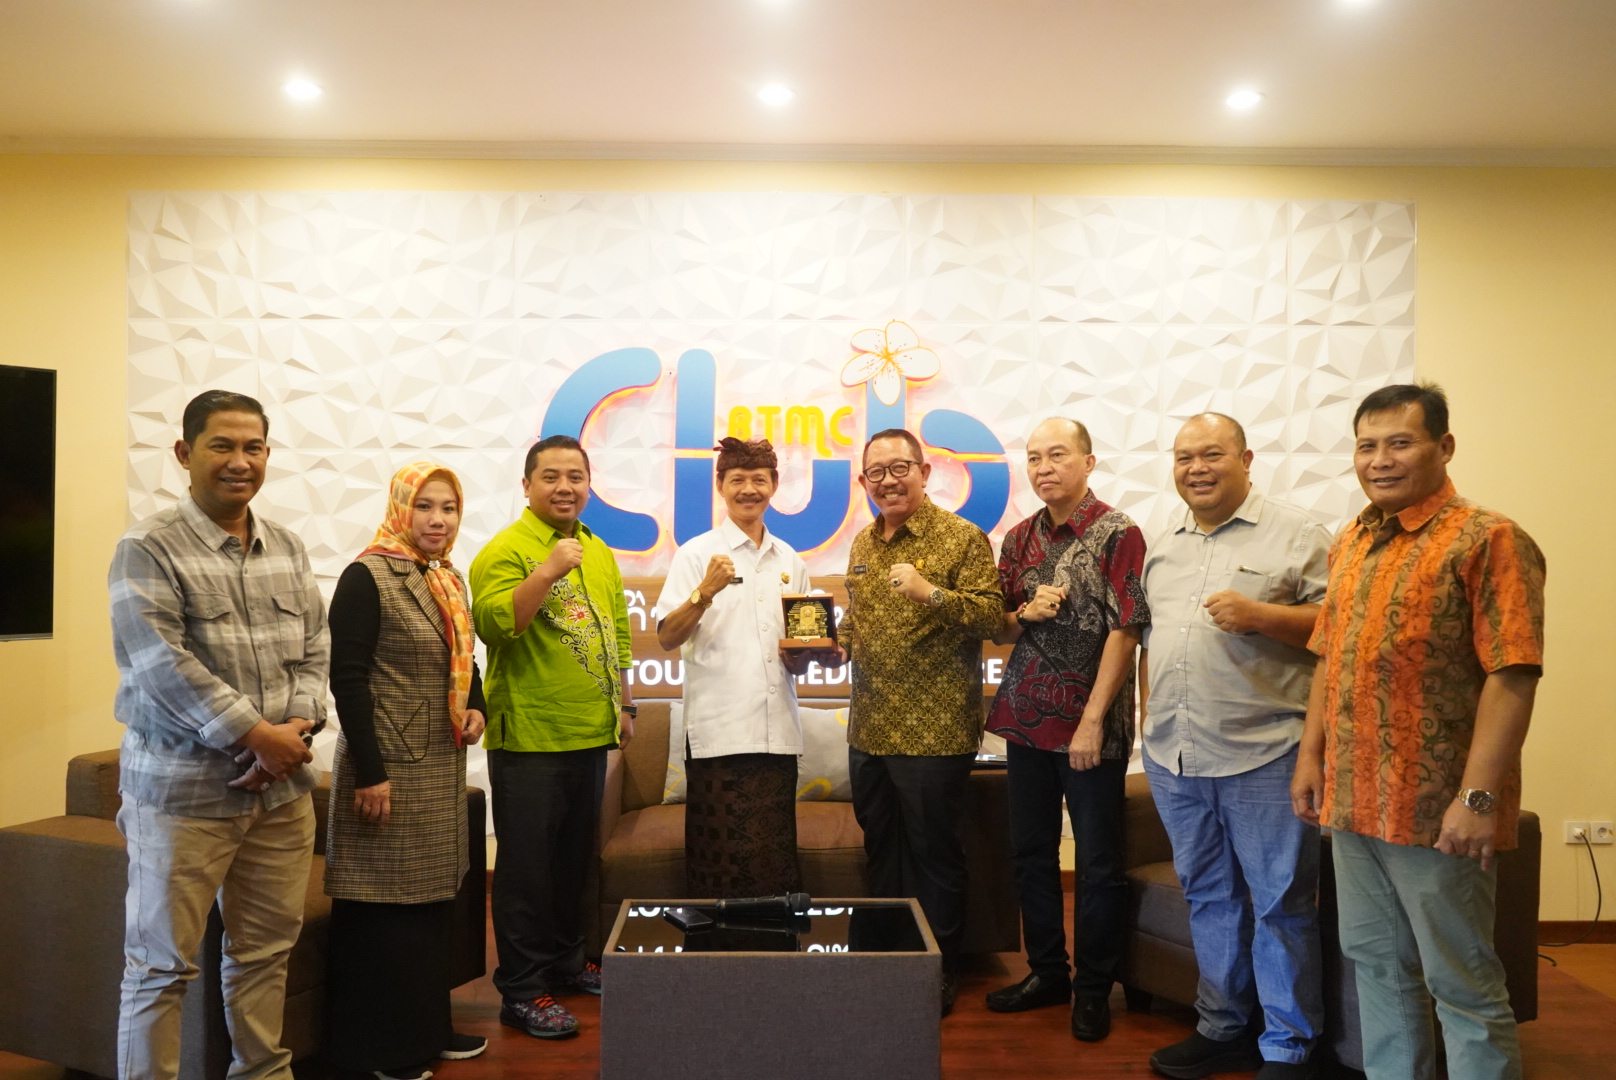 Wakil Ketua DPRD Provinsi Jawa Timur Istu Hari Subagio menekankan strategi pengembangan pariwisata Jawa Timur guna meningkatkan perekonomian Jawa Timur dan mendongkrak PAD Jawa Timur.